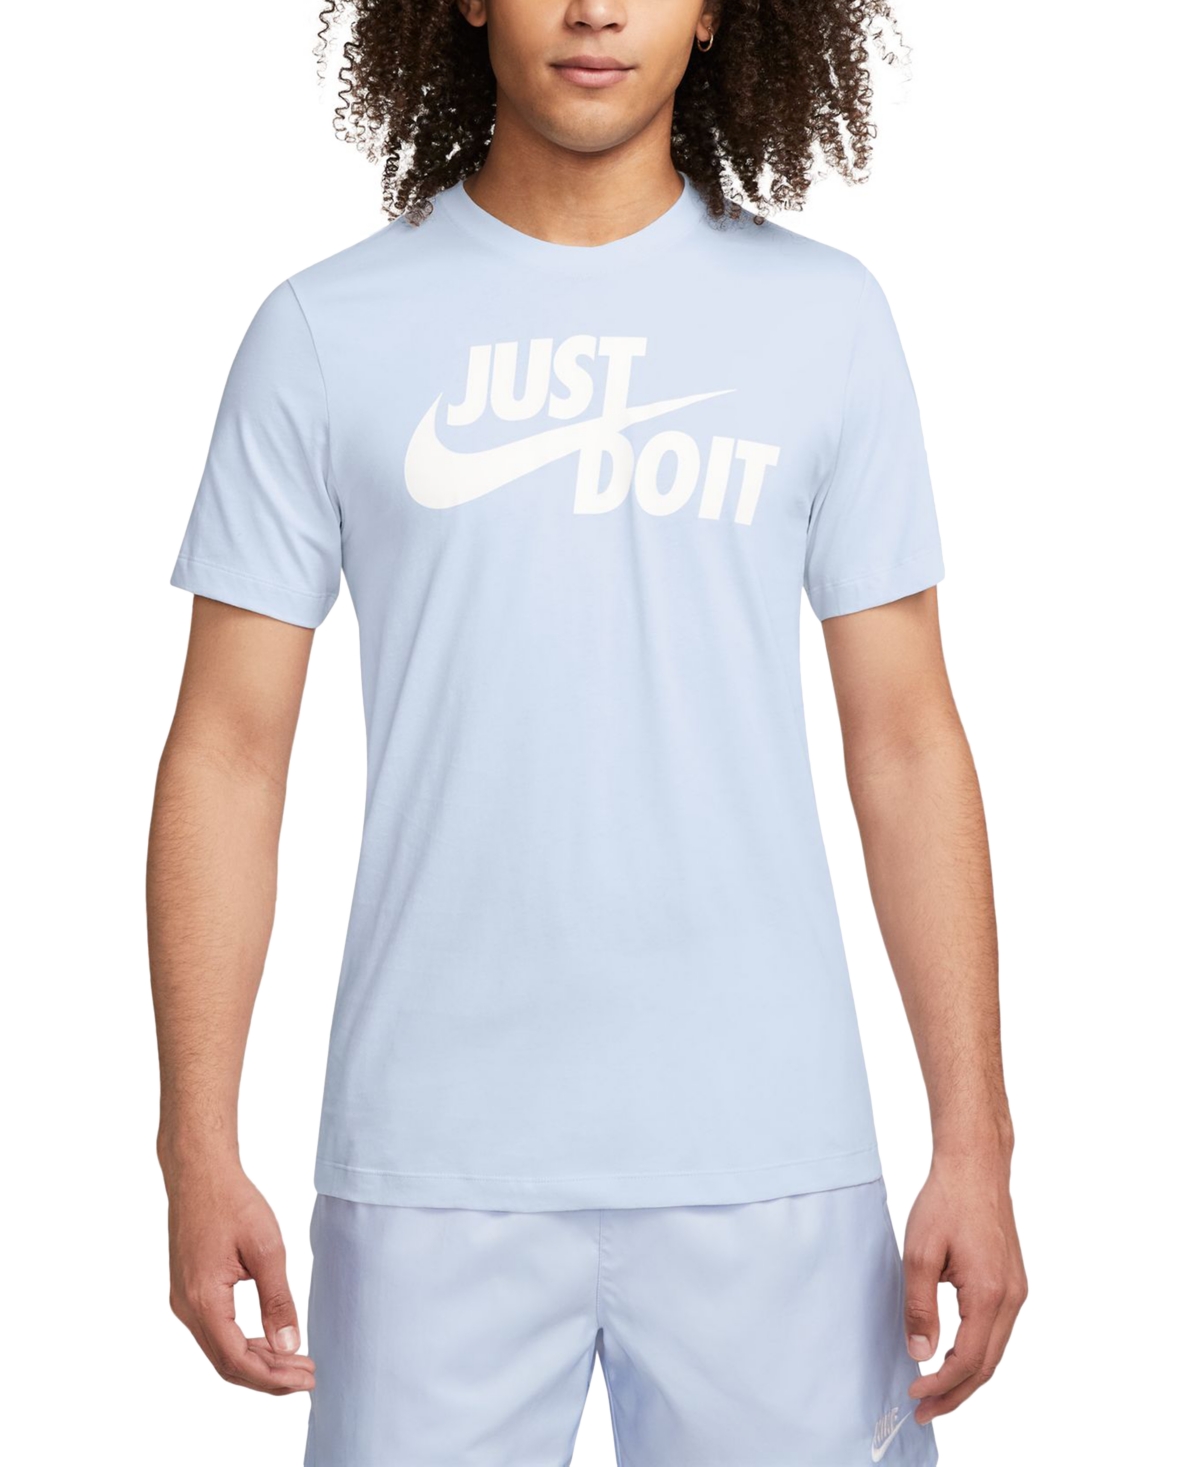 Nike Men's Sportswear Just Do It T-shirt In Football Grey